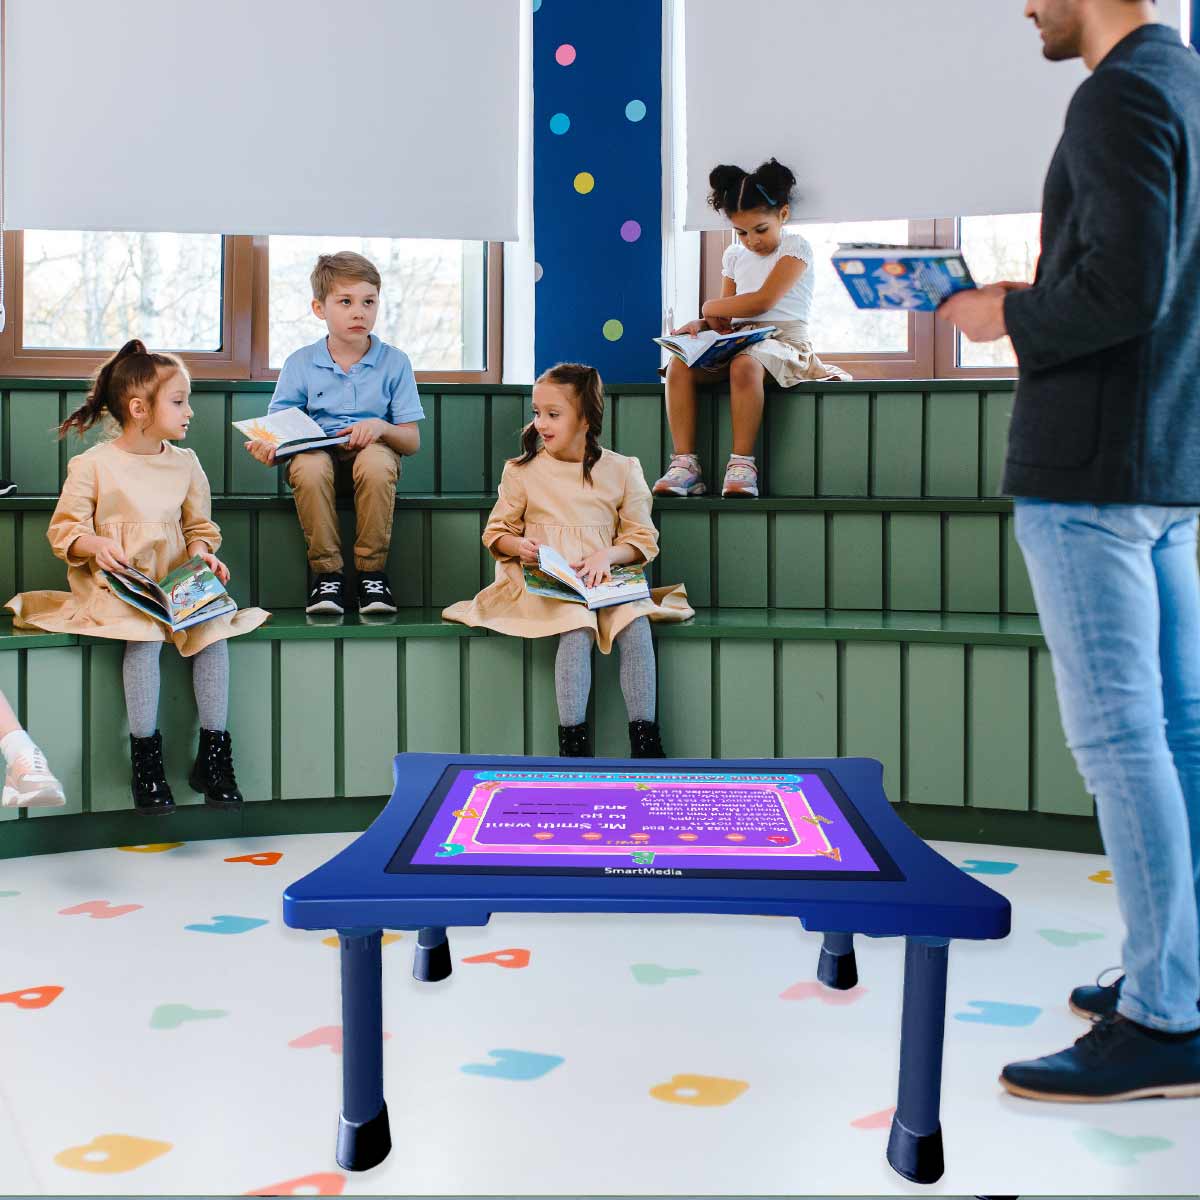 Tavolo Interattivo Android SmartMedia per Scuola Infanzia ad Altezza bambino